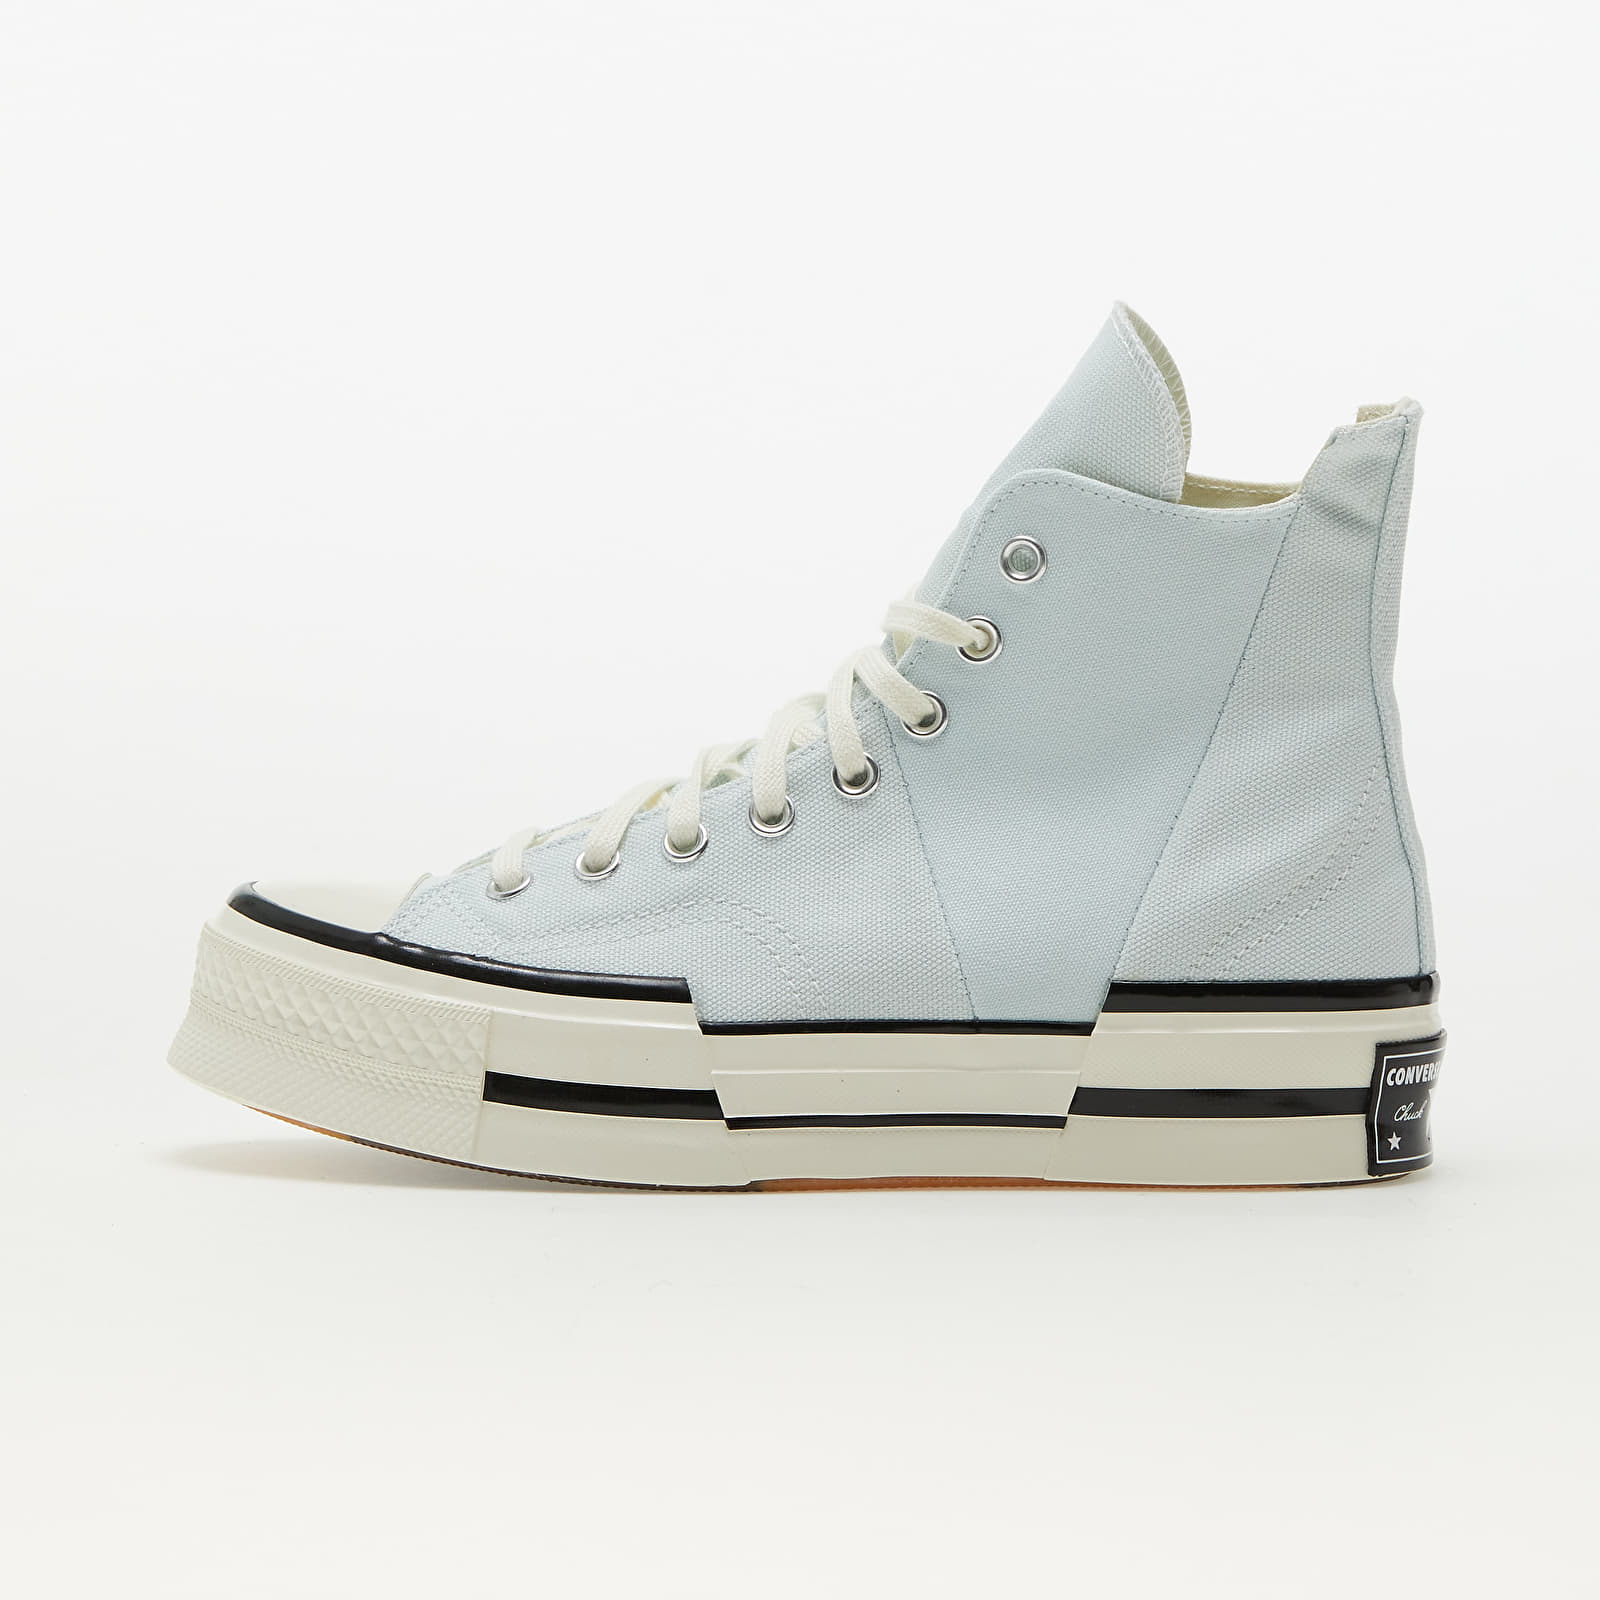 Men's shoes Converse Chuck 70 Plus Seasonal Color Aqua Mist/ Egret/ White